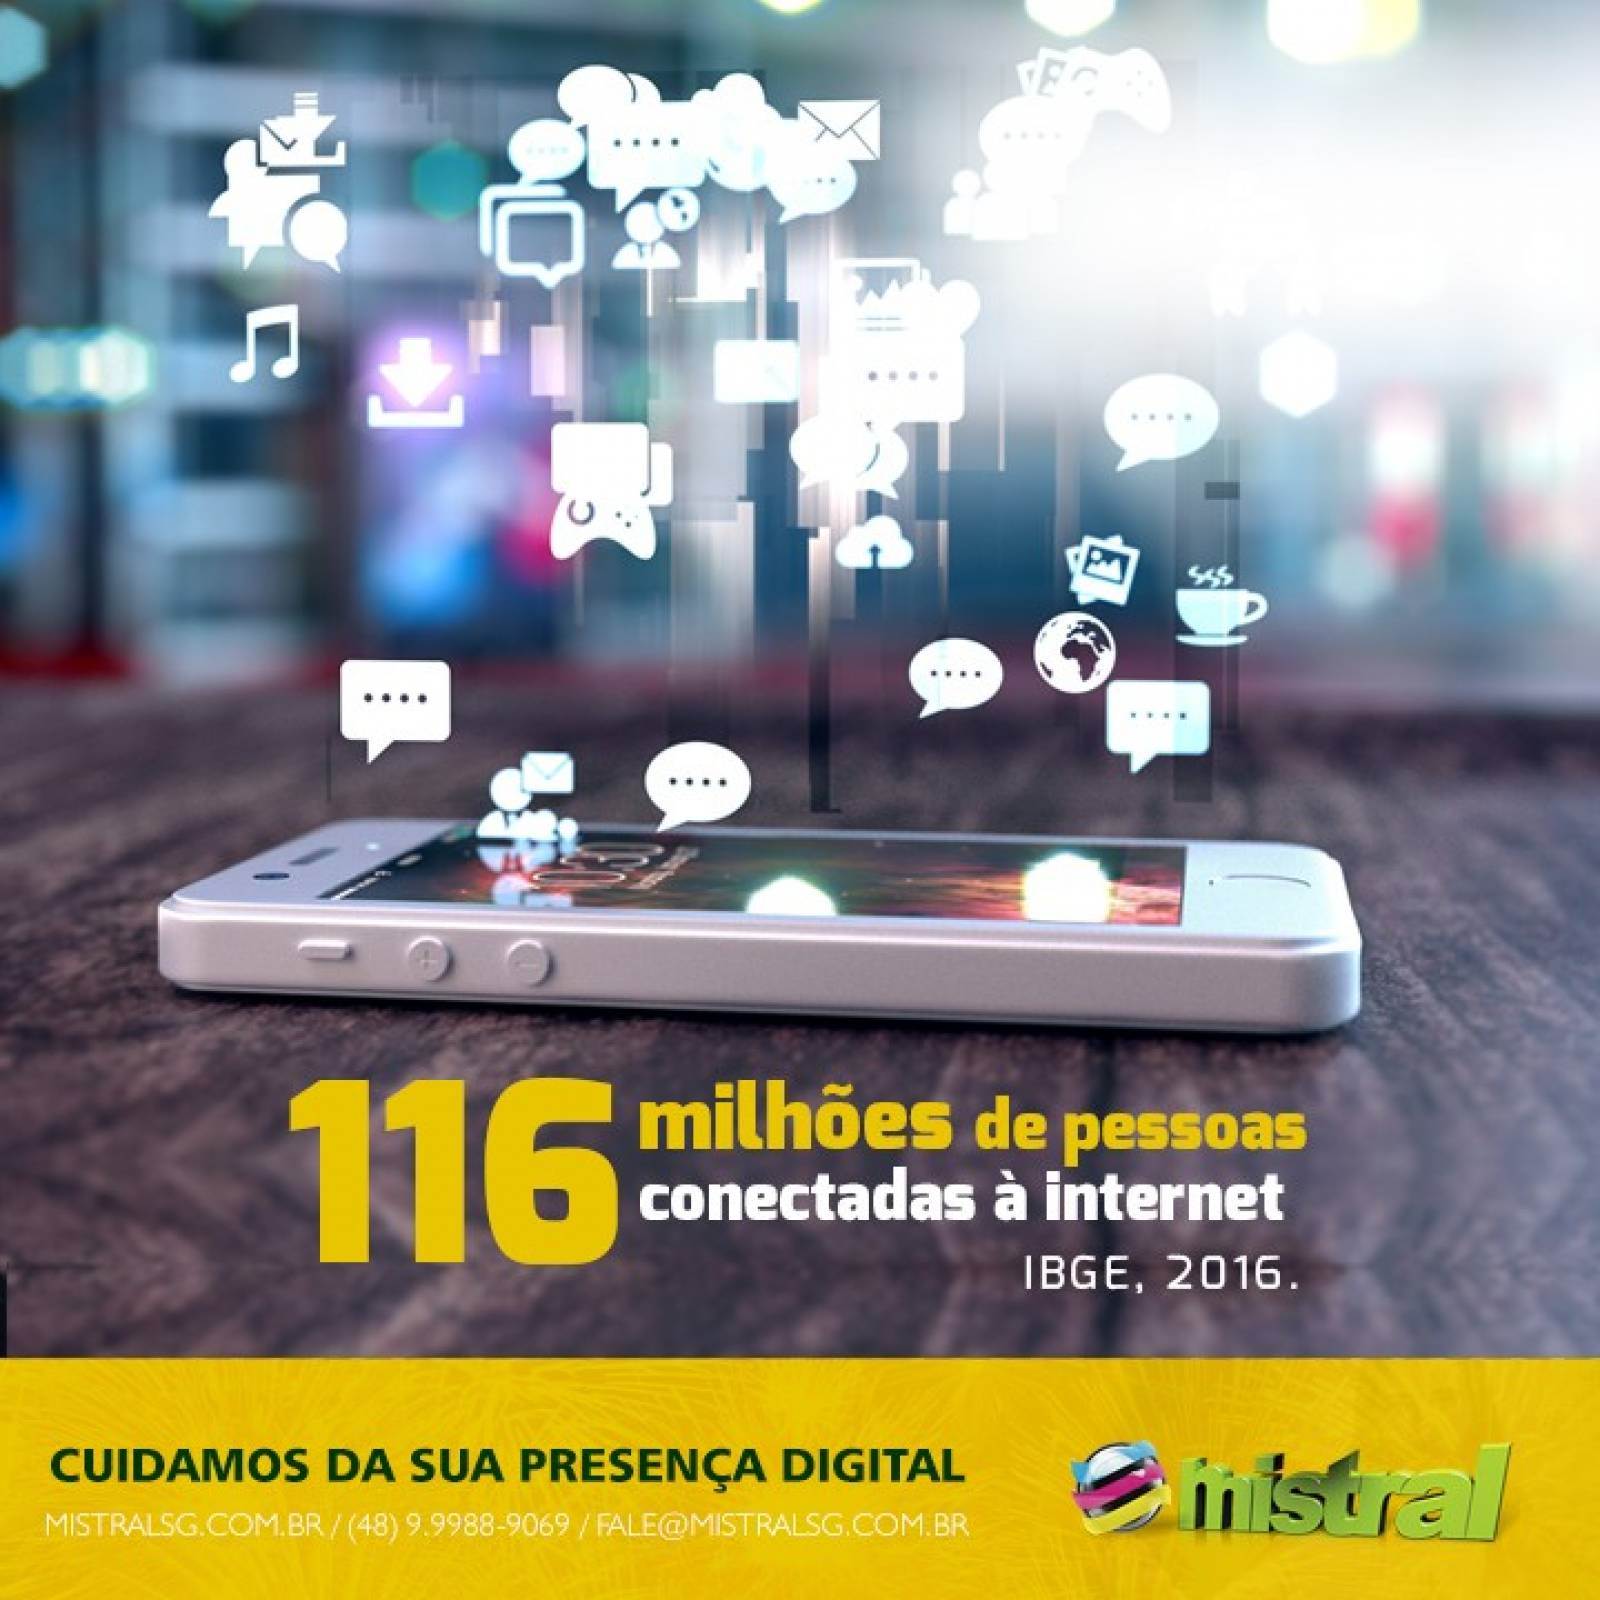 Celular: principal aparelho para acessar internet no Brasil